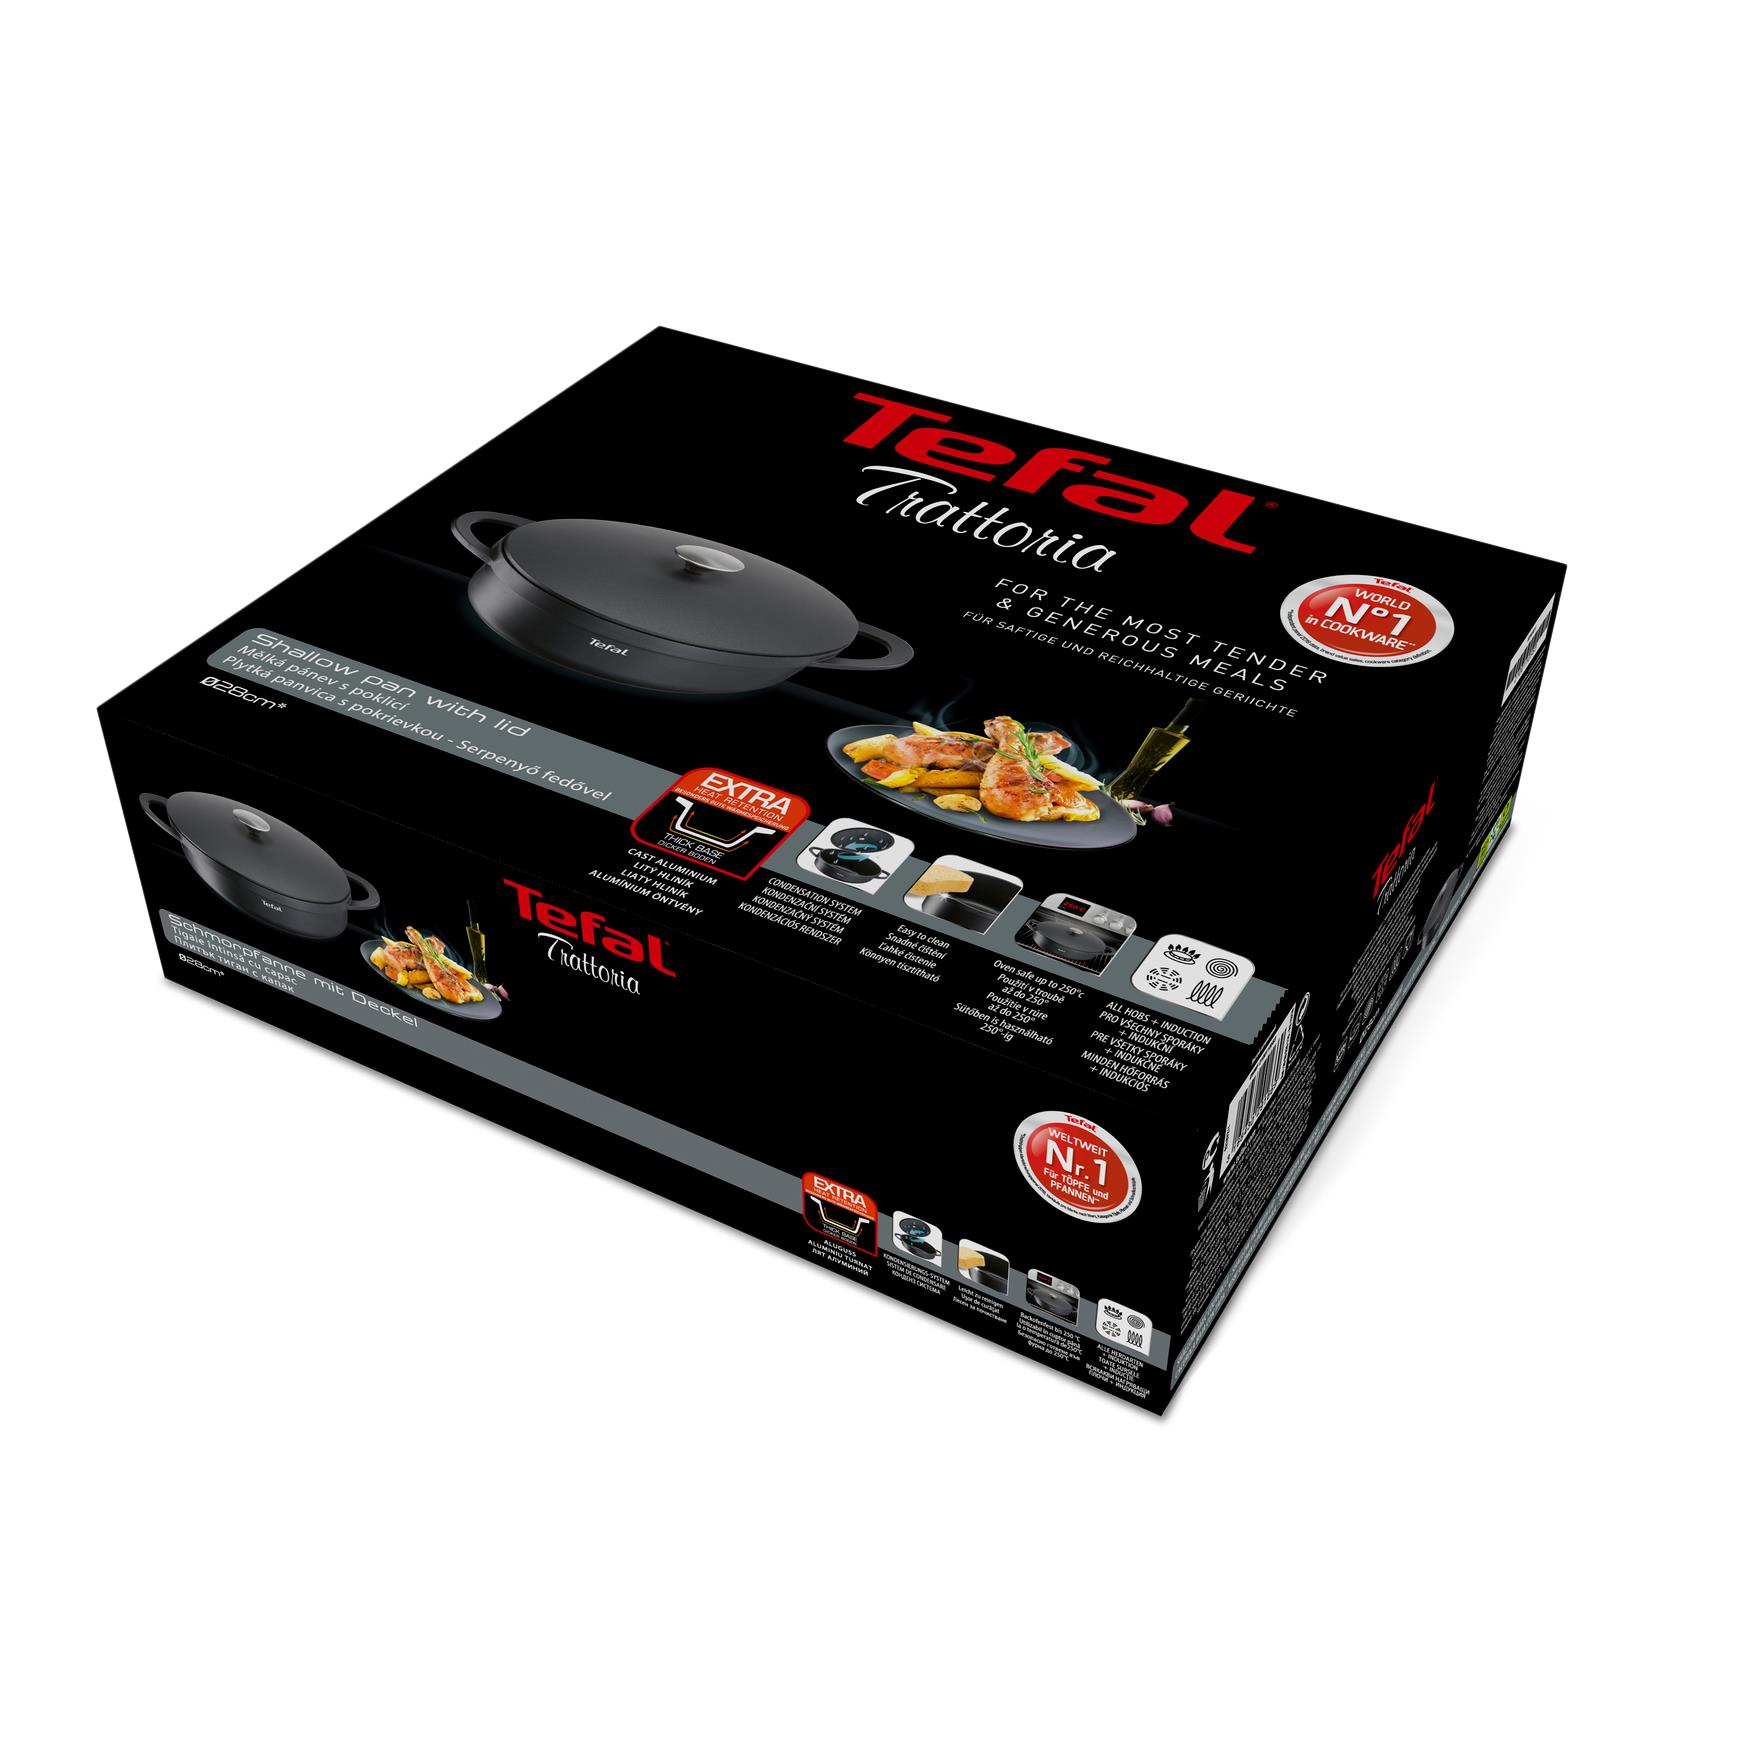 Tefal Trattoria E21872 Serving pan with cast lid, Aluminium, Black